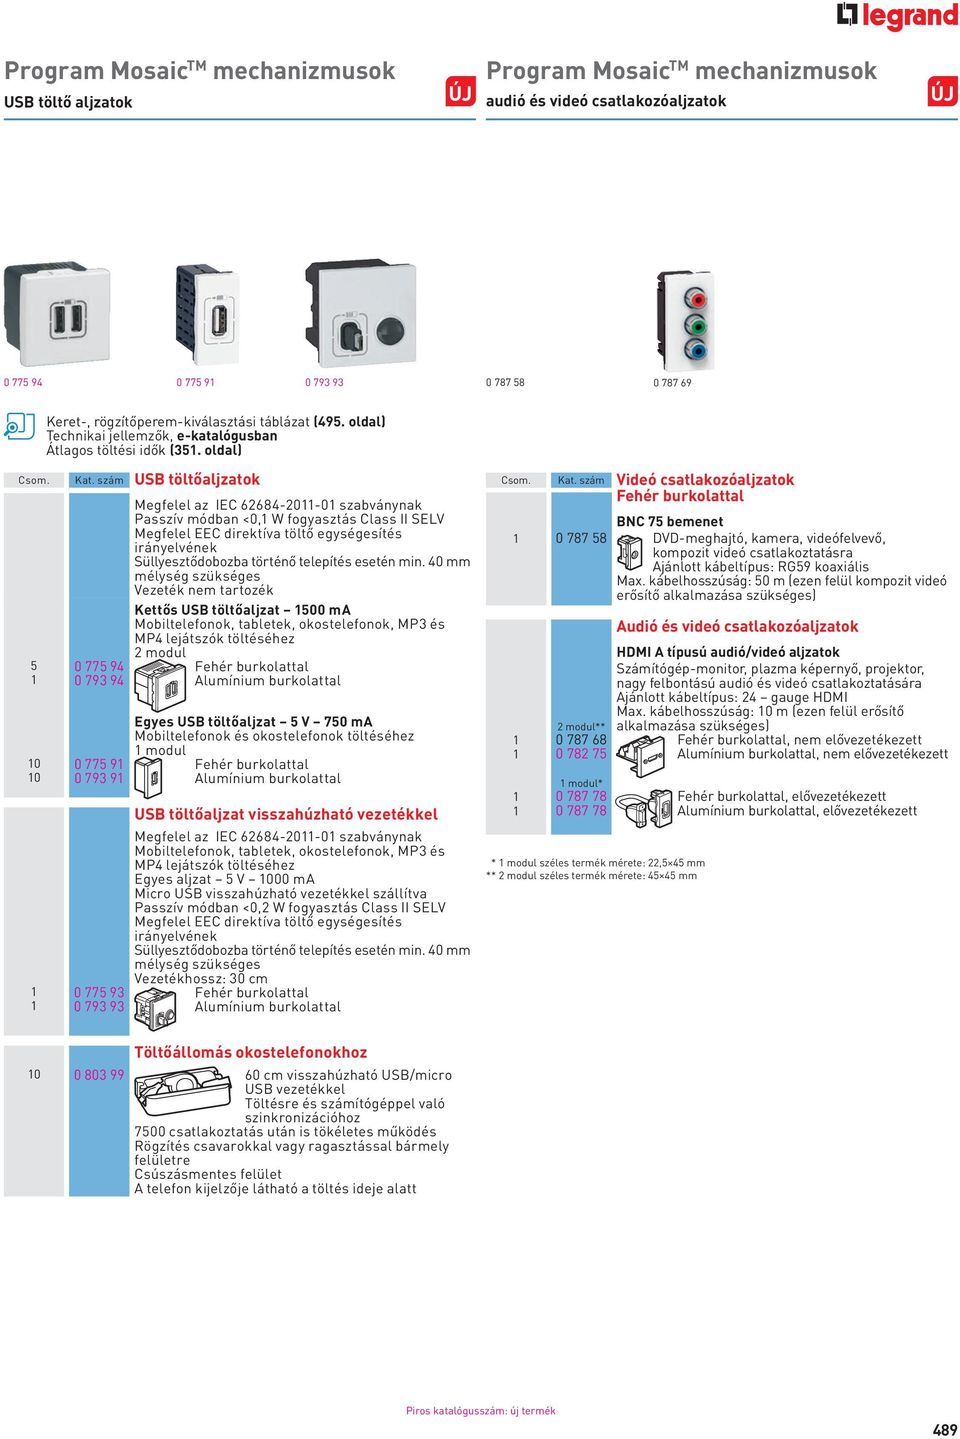 szám USB töltőaljzatok Megfelel az IEC 62684-2011-01 szabványnak Passzív módban <0,1 W fogyasztás Class II SELV Megfelel EEC direktíva töltő egységesítés irányelvének Süllyesztődobozba történő